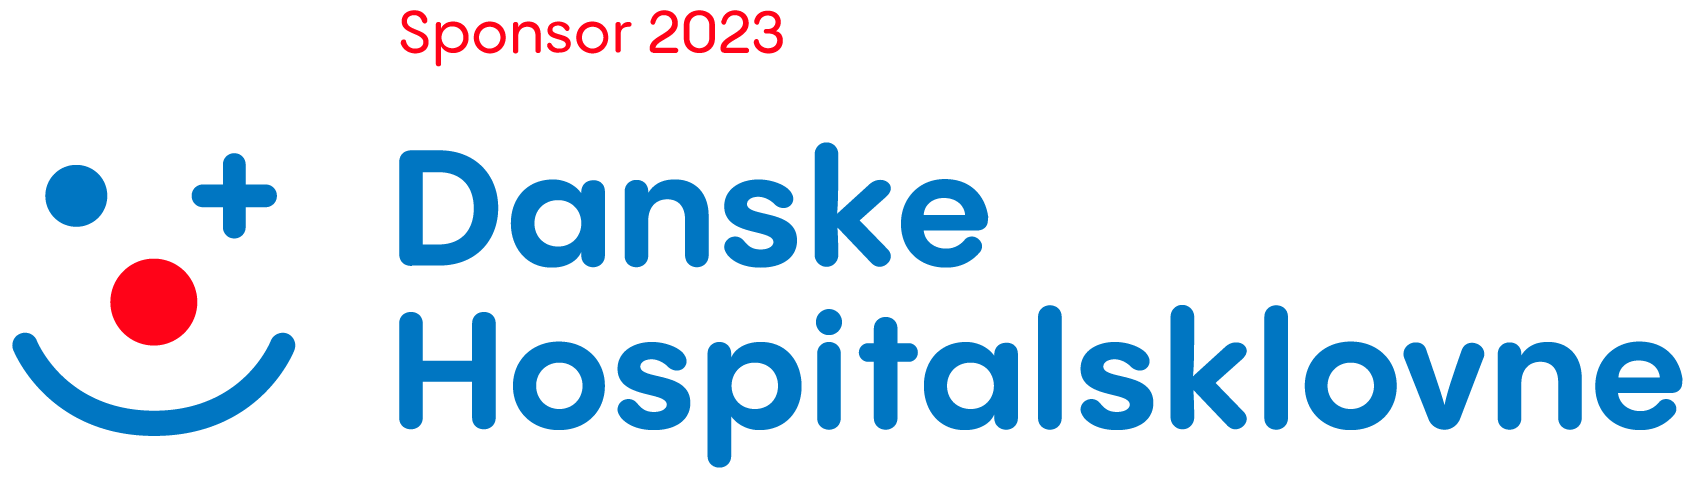 Danske Hospitalsklovne Sponsor 2023